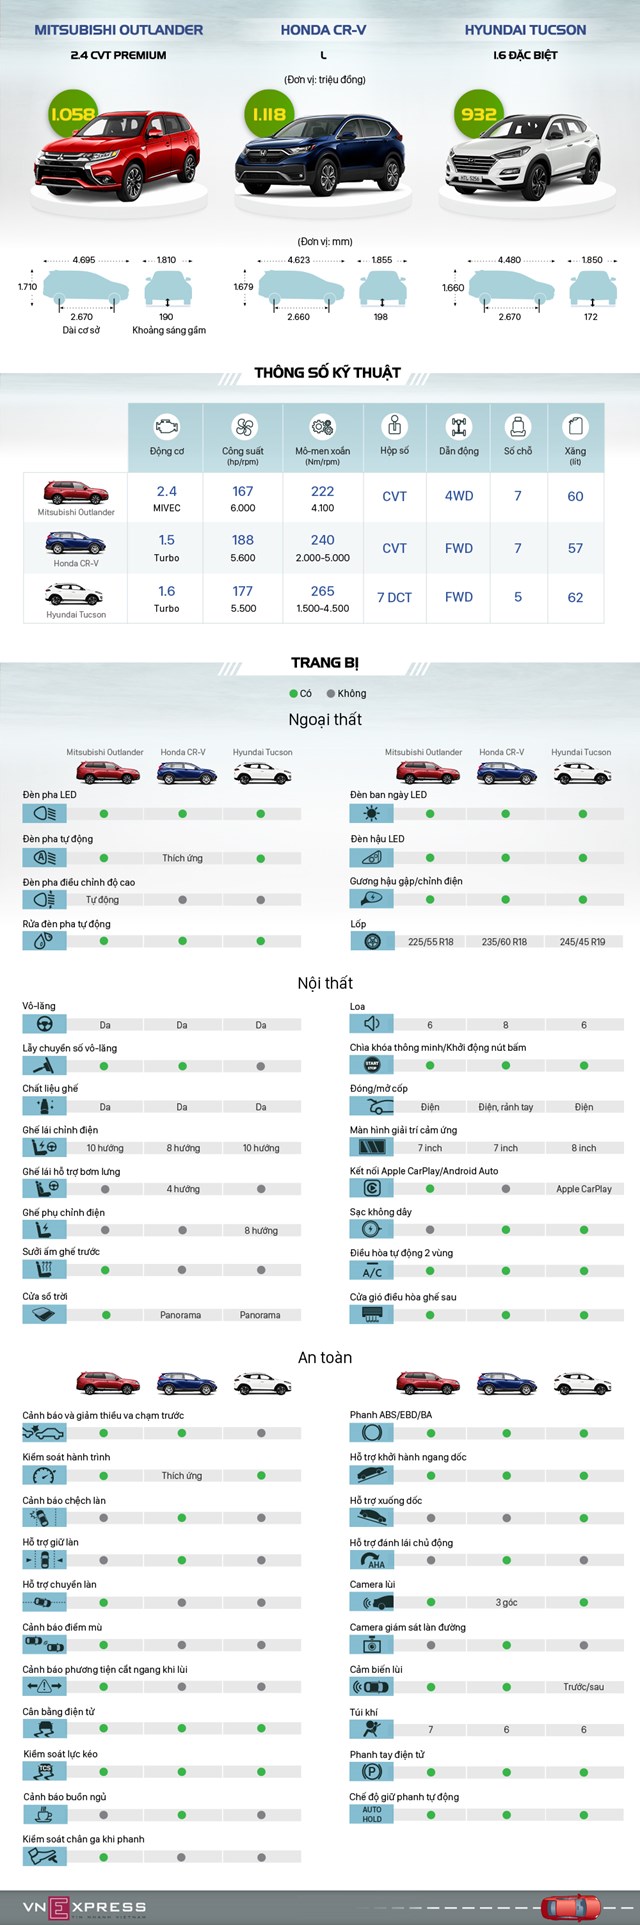 [Infographics] Outlander 2020 "đọ" trang bị với CR-V và Tucson - Ảnh 1